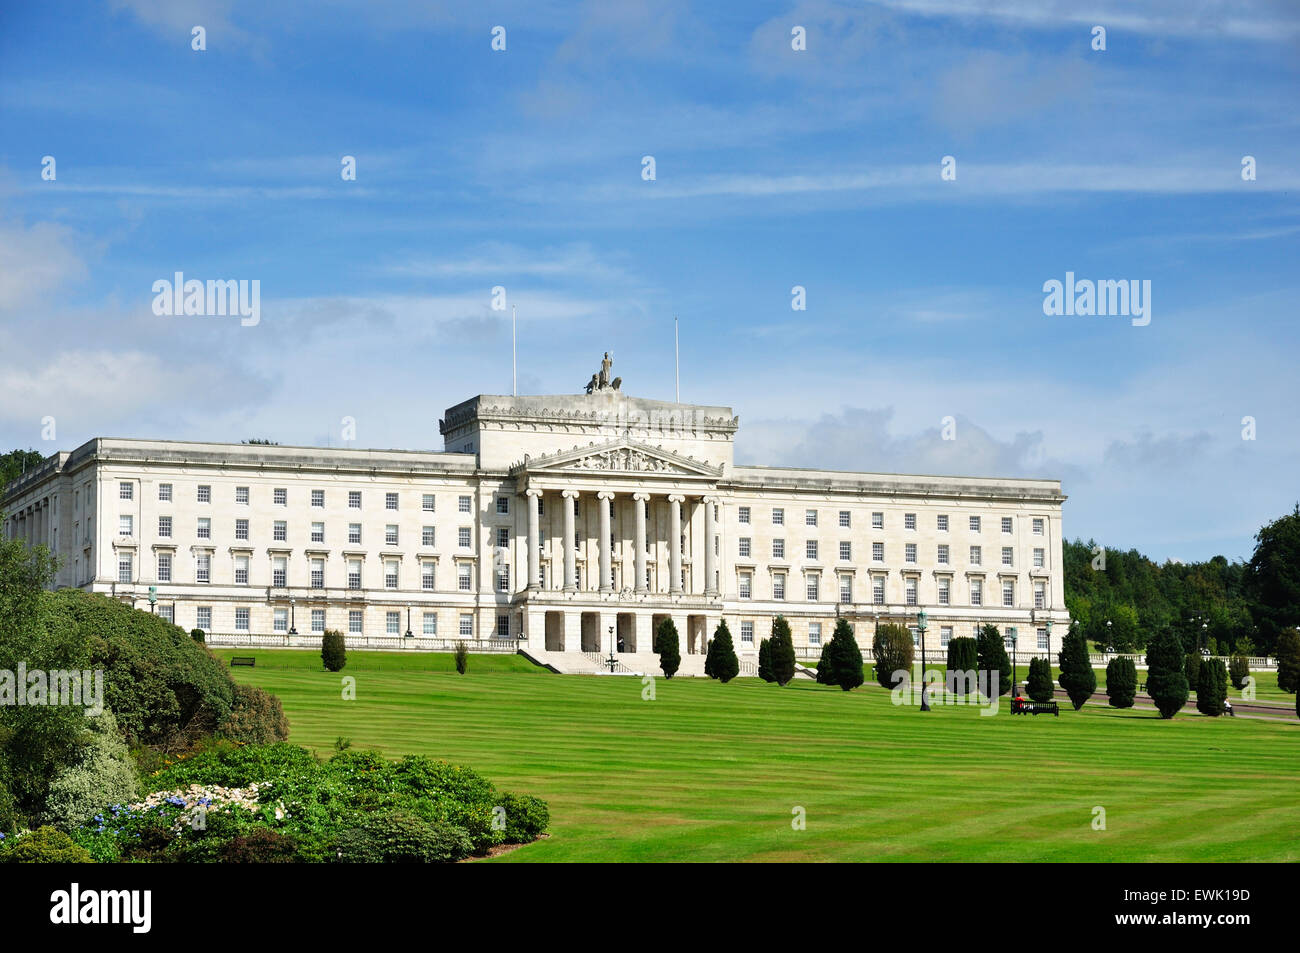 Parliament Building, Stormont, Belfast, Northern Ireland, UK Stock Photo